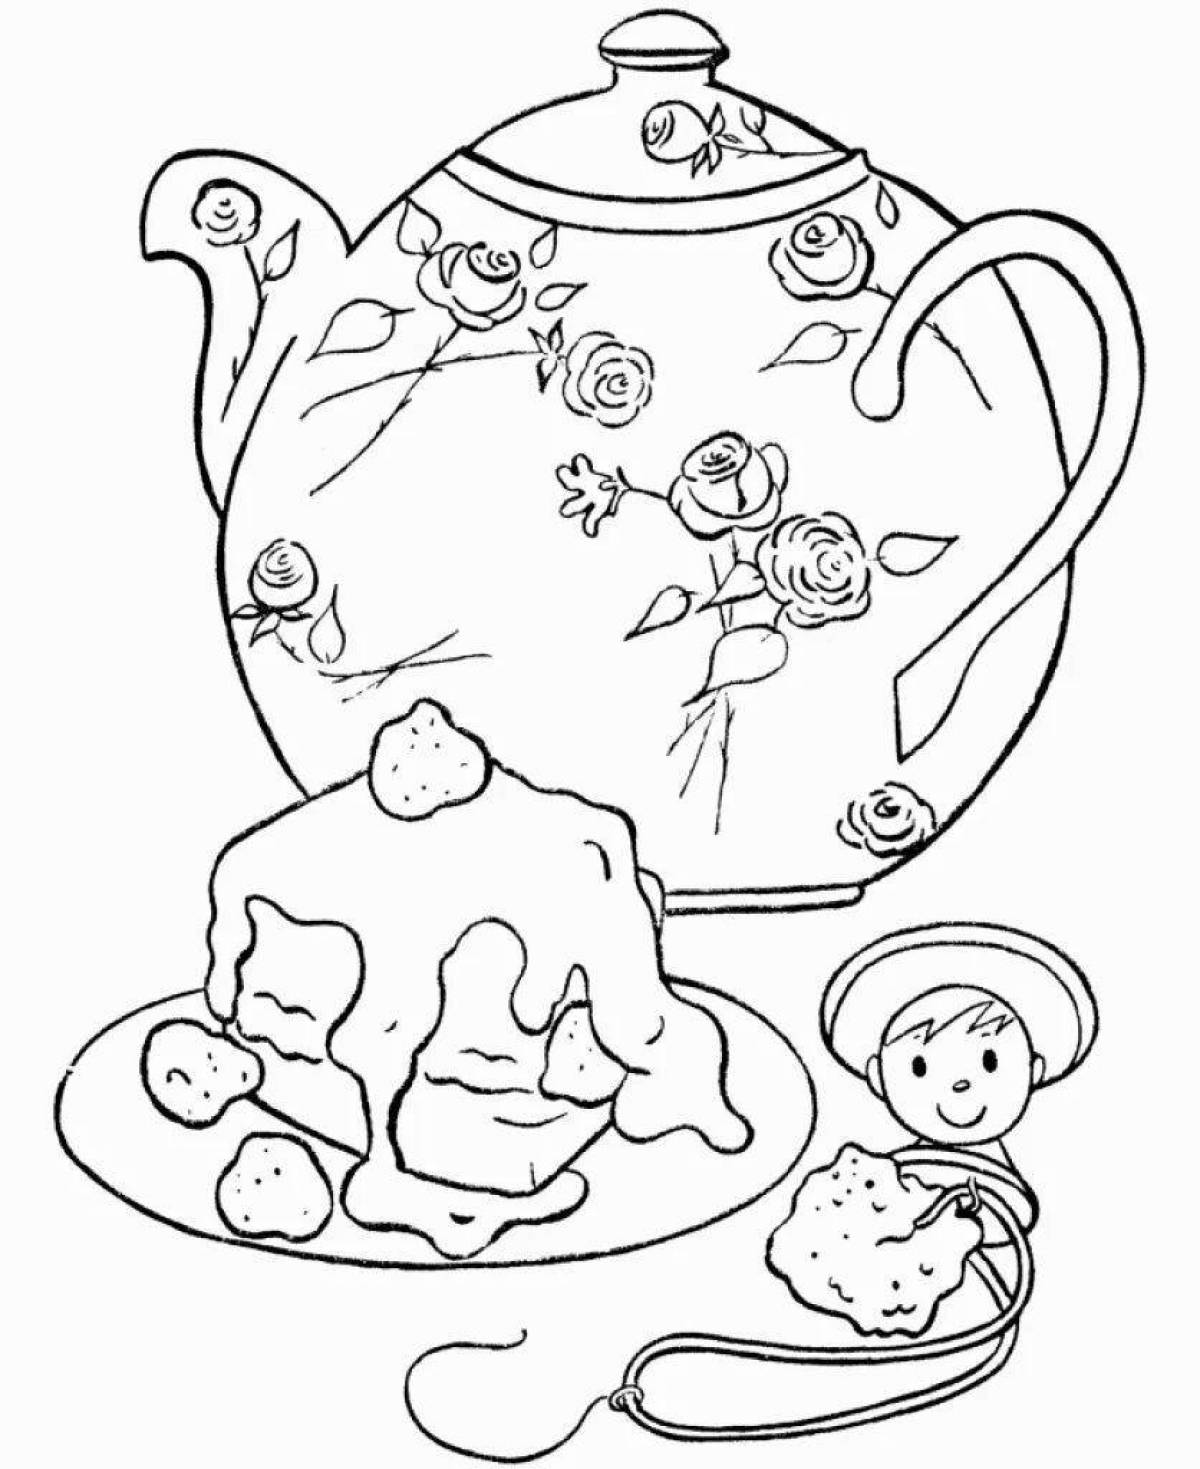 Fabulous tea set coloring page